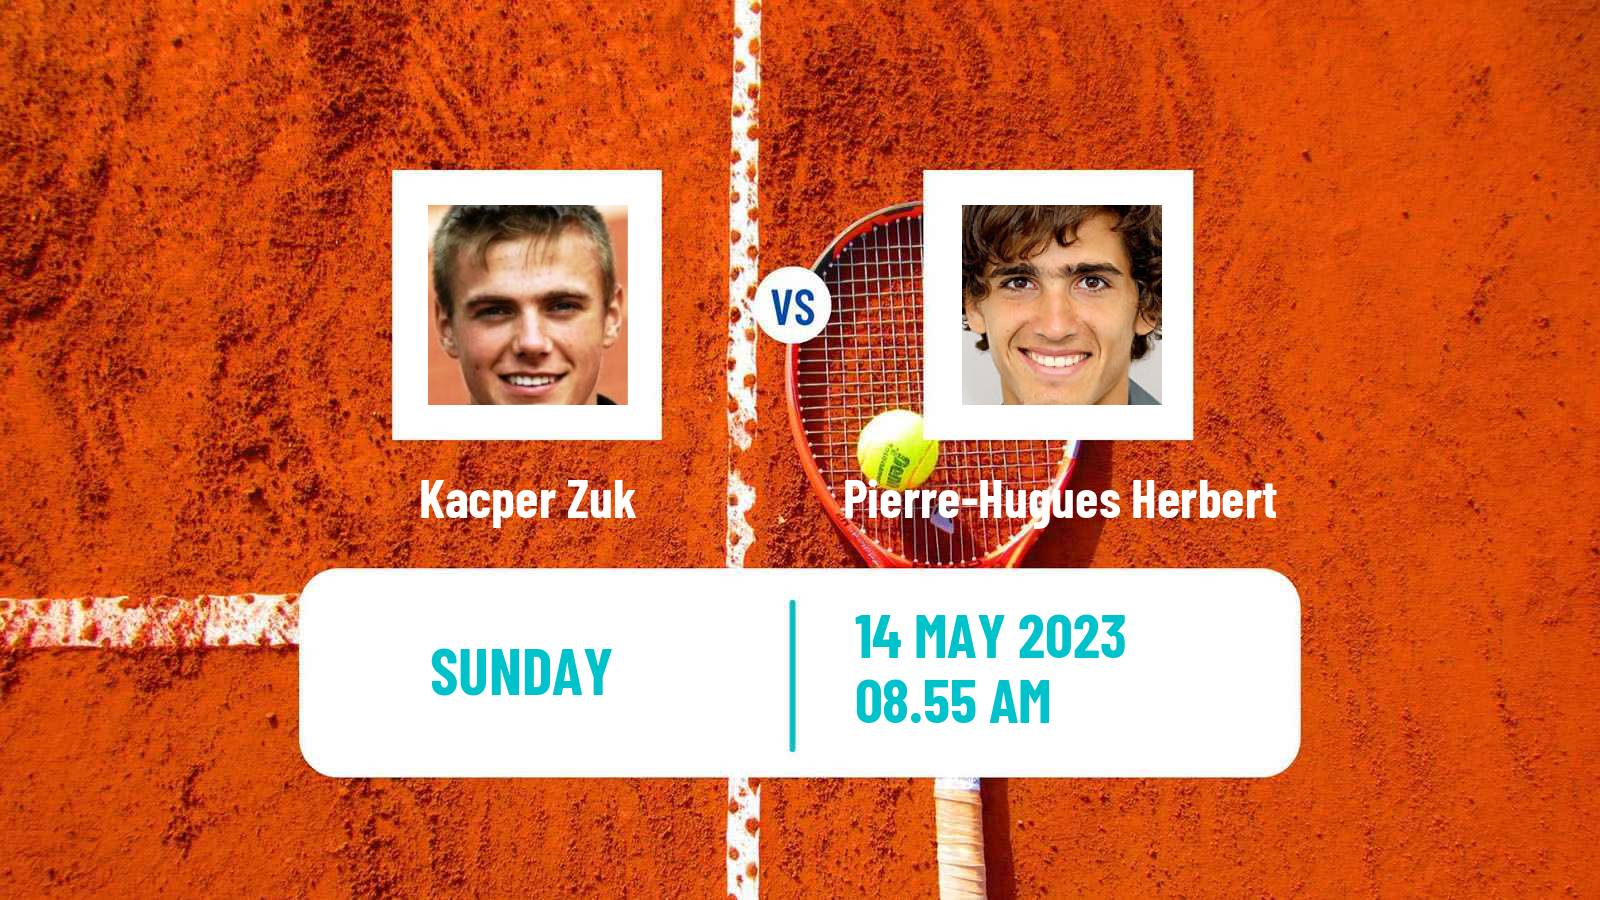 Tennis ATP Challenger Kacper Zuk - Pierre-Hugues Herbert